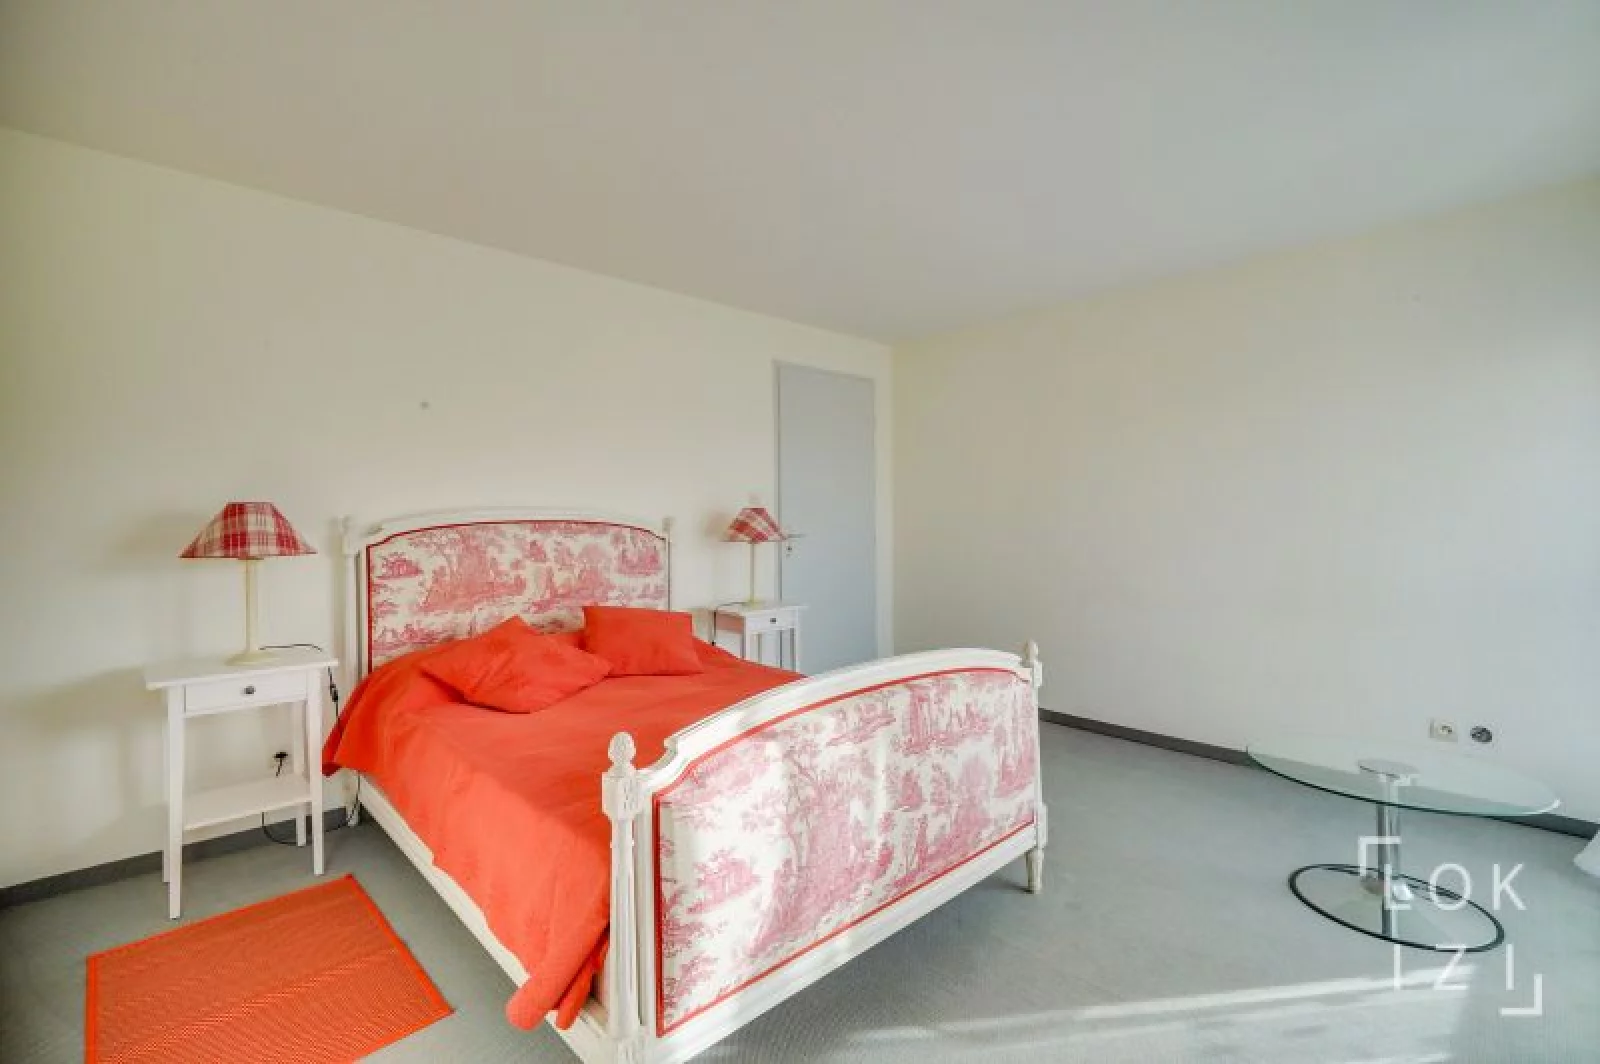 Location appartement meublé duplex T4 de 101m² (Bordeaux St Augustin)